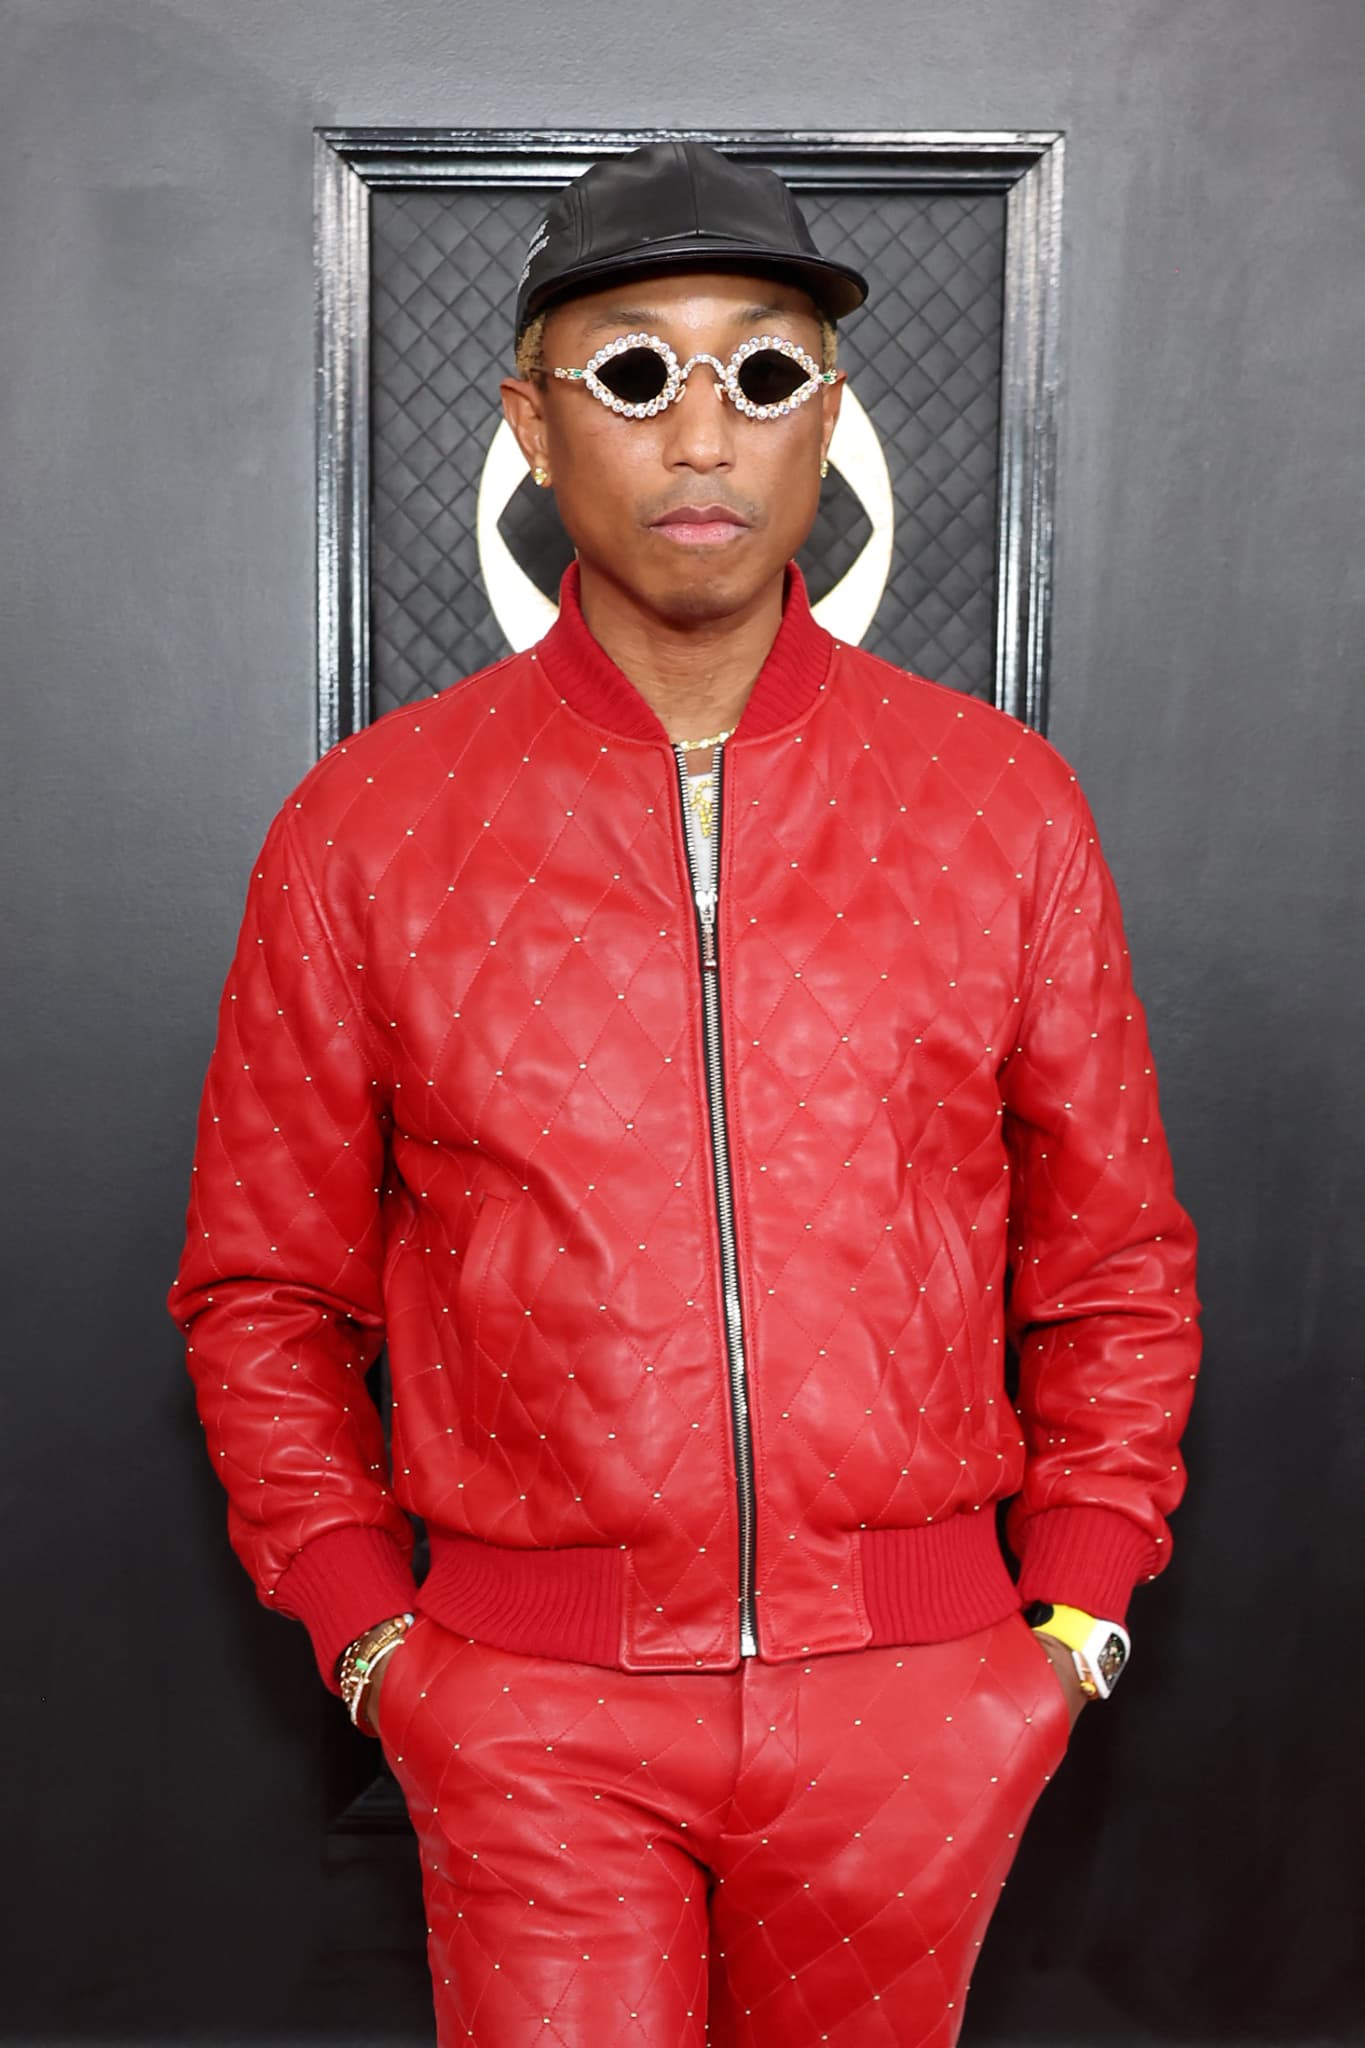 Pharrell Williams chez Louis Vuitton Homme : les réactions